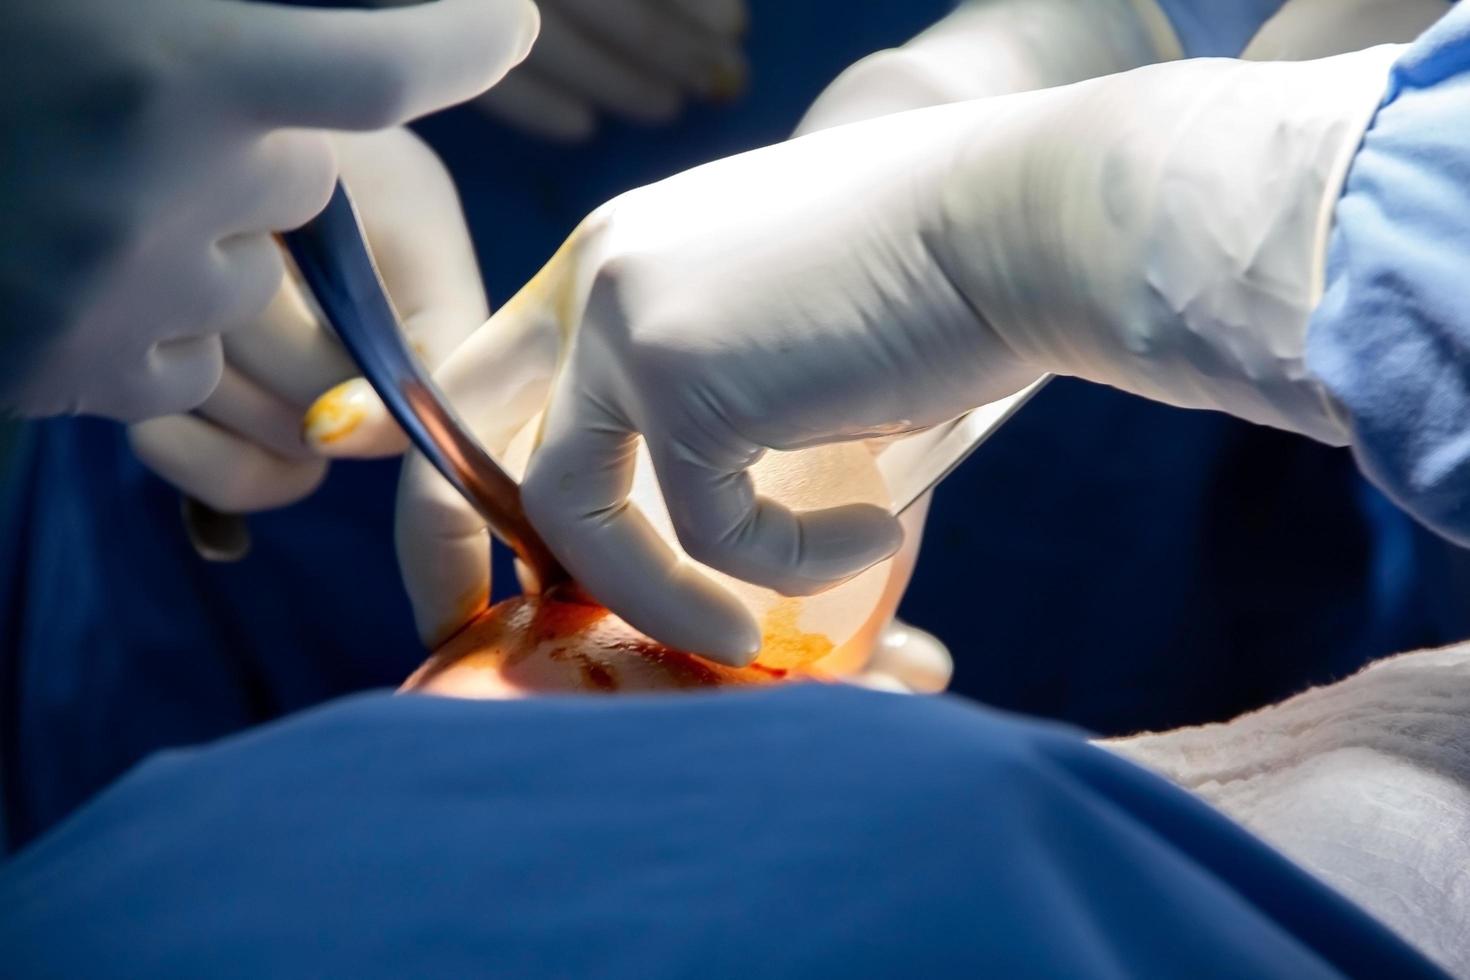 Operation der offenen Brust, Einsetzen einer Prothese. Nahaufnahme der Brust und der Hände und Werkzeuge der Ärzte. foto